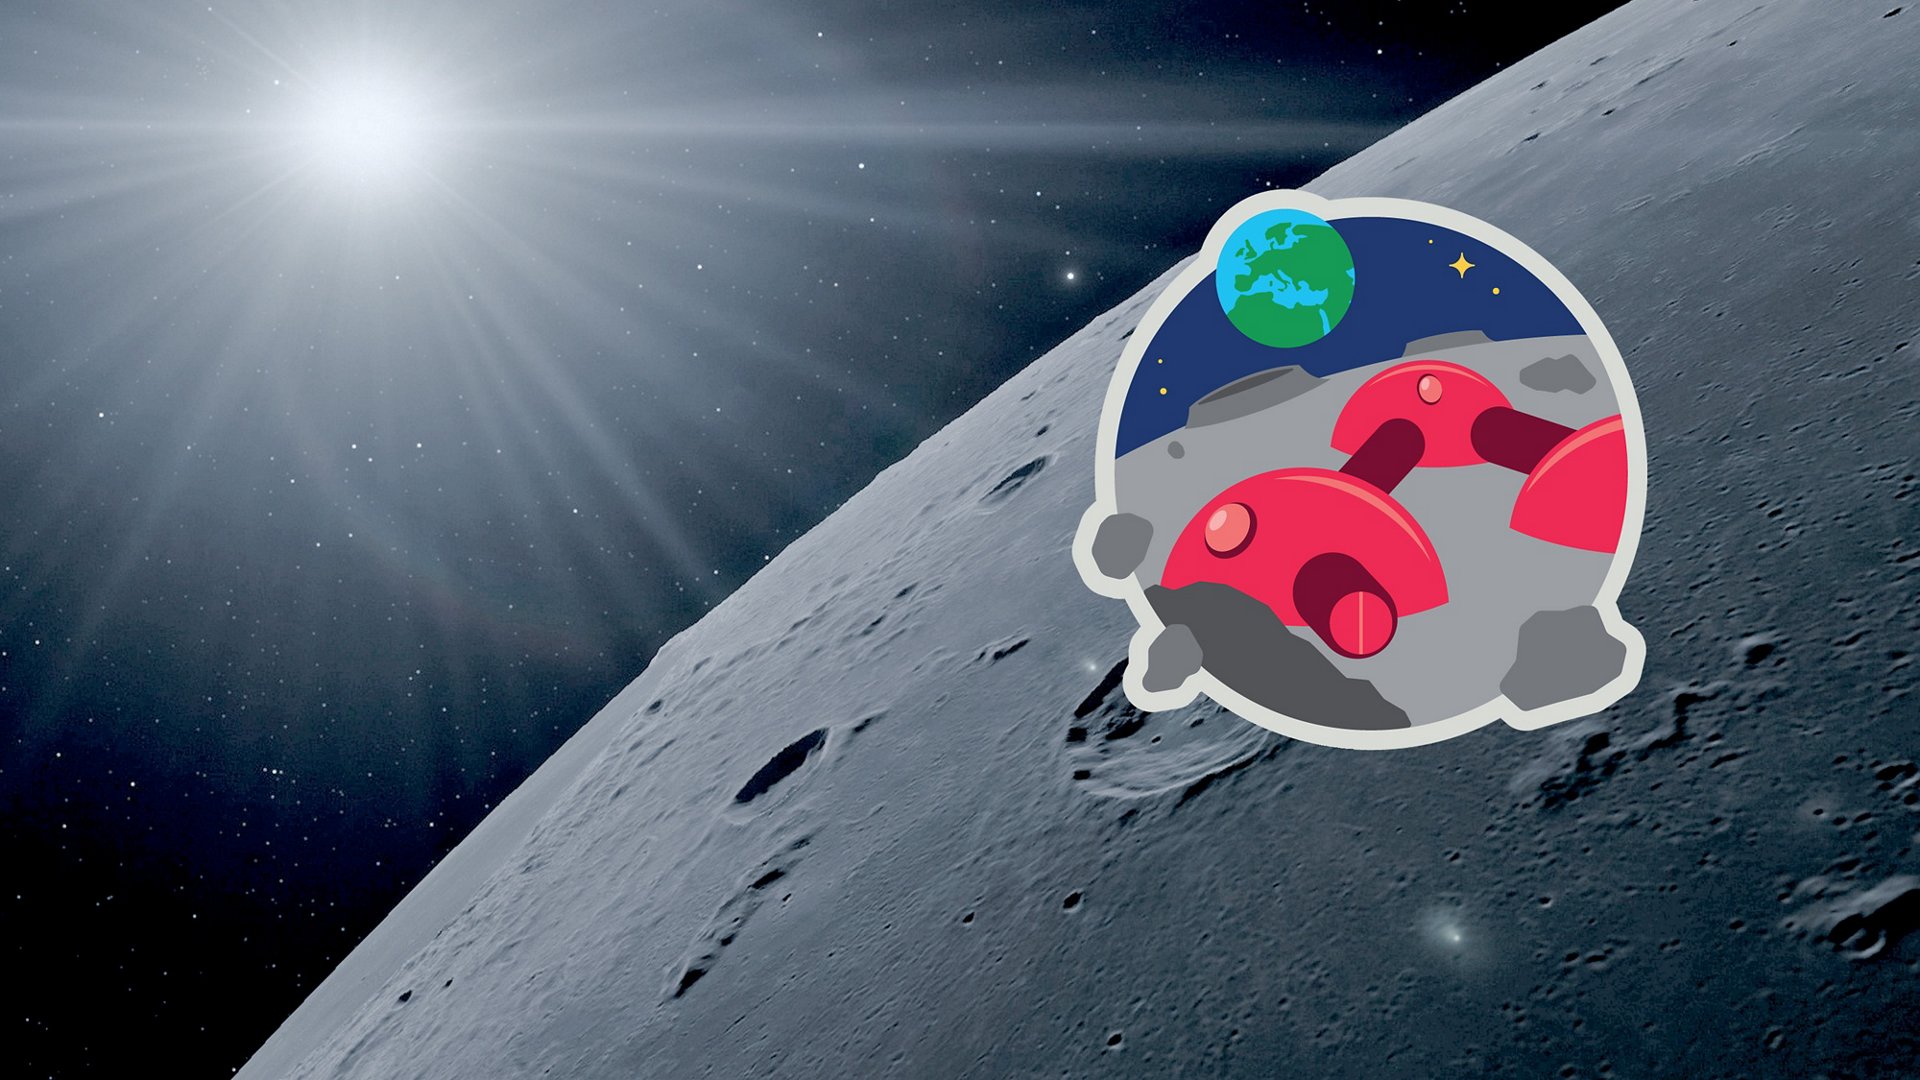 月球营地挑战标志在月球表面